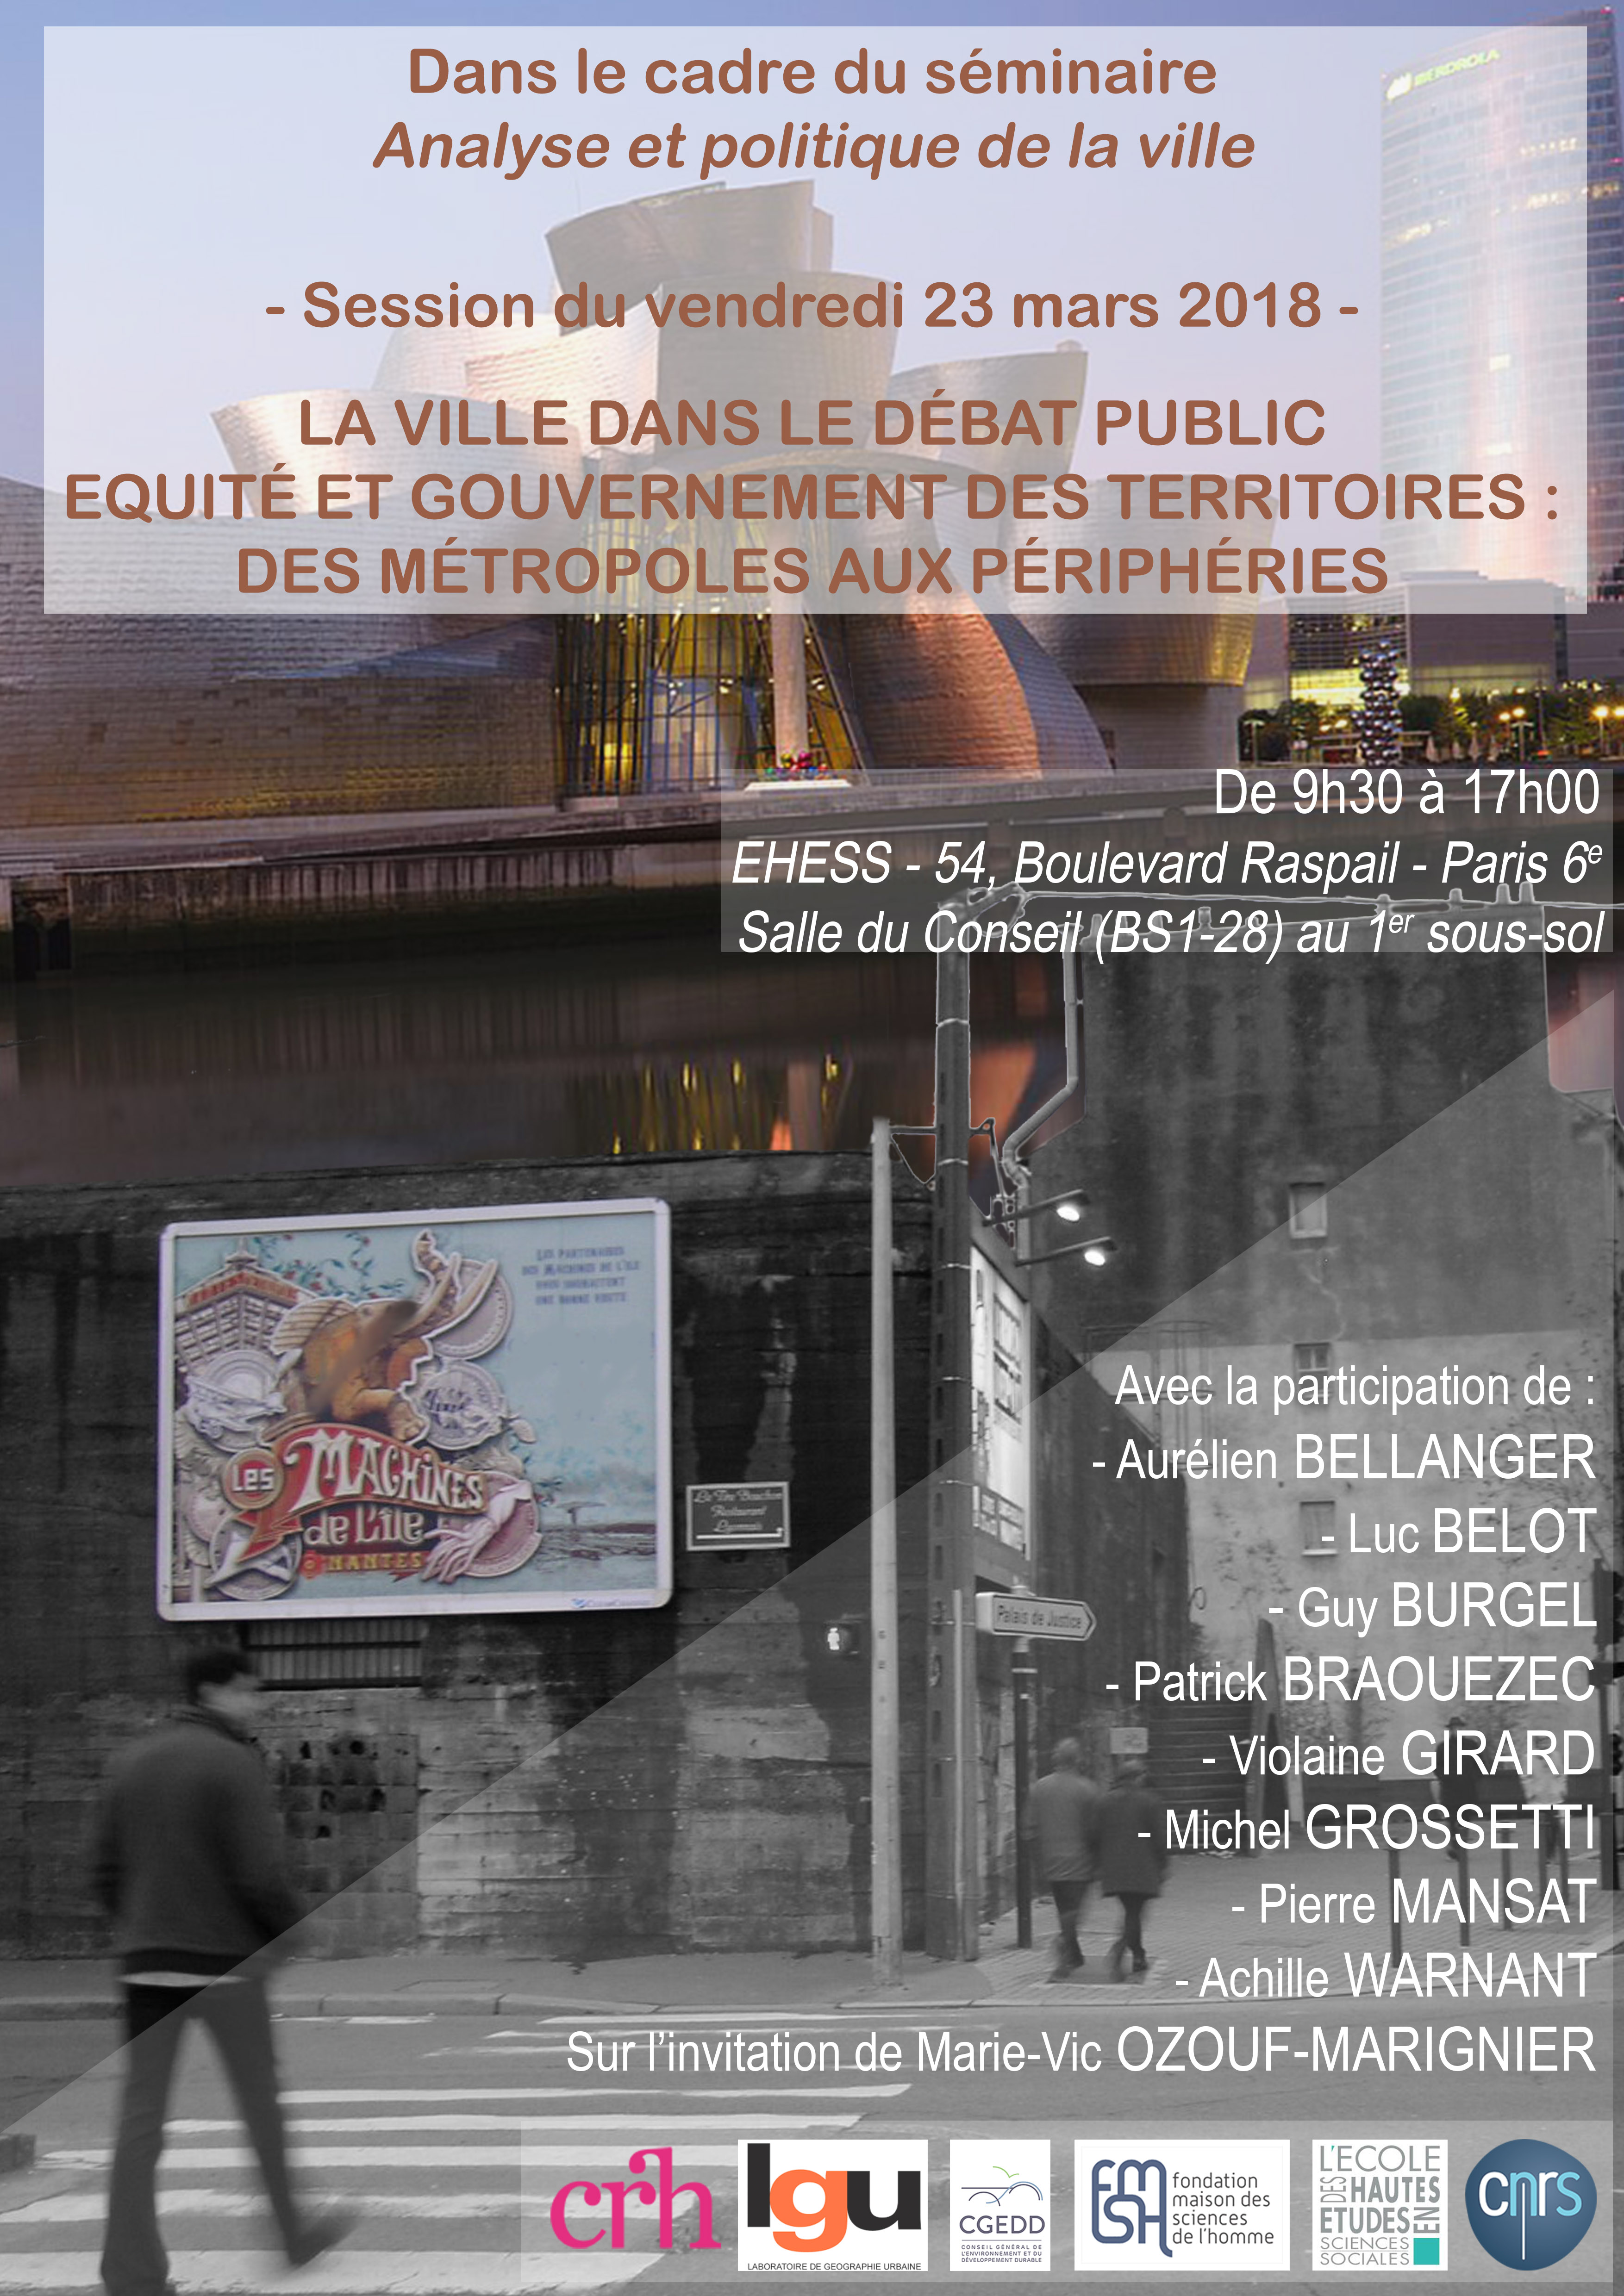 
	vendredi 23 mars 2018, EHESS 54 boulevard Raspail Paris 6e<br />Salle du Conseil, au 1er sous-sol